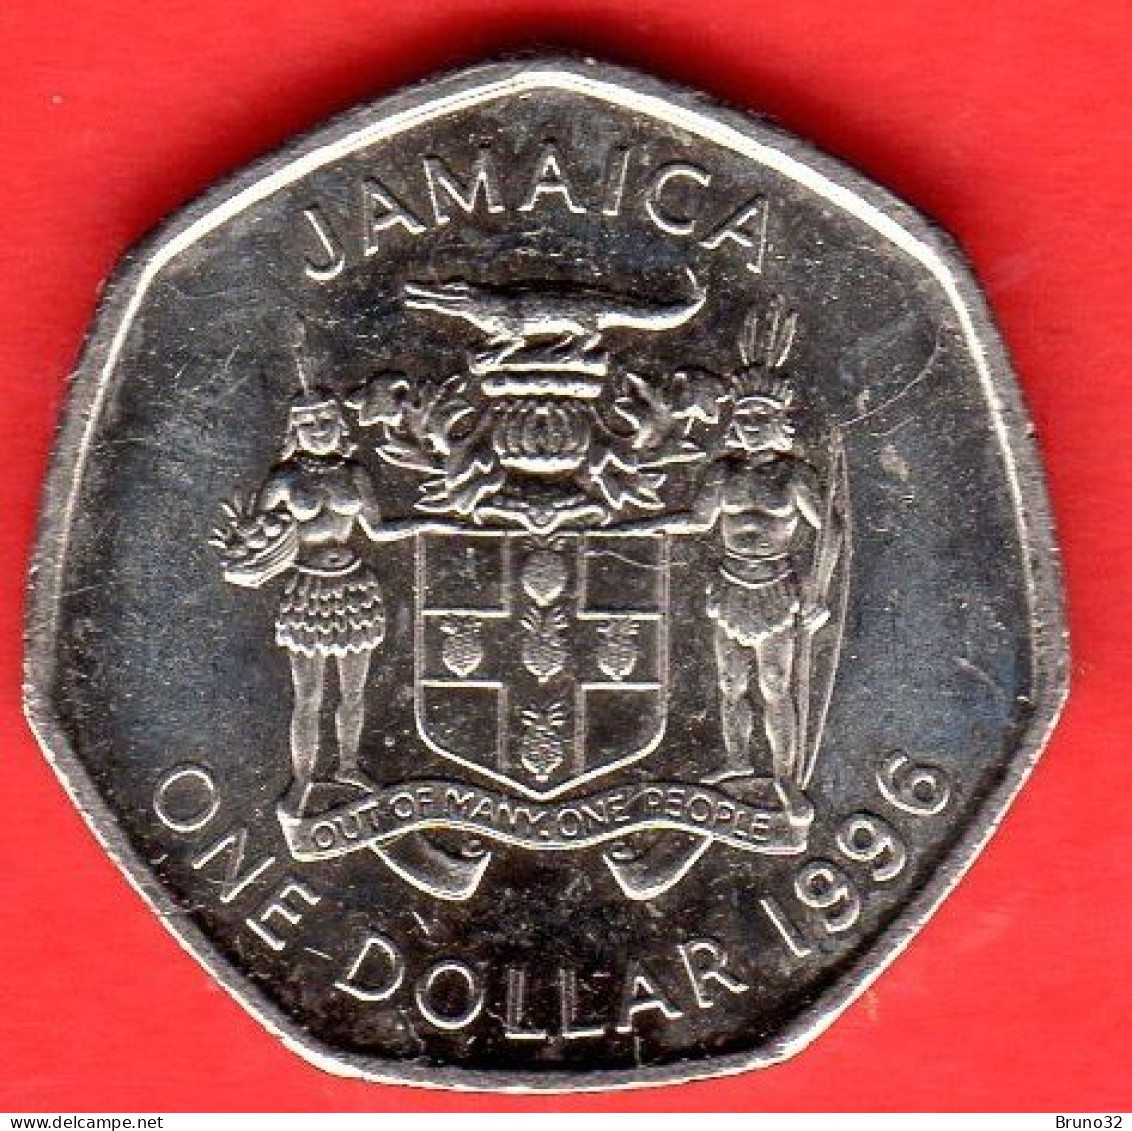 GIAMAICA - JAMAICA - 1996 - 1 Dollar - QFDC/aUNC - Come Da Foto - Jamaica